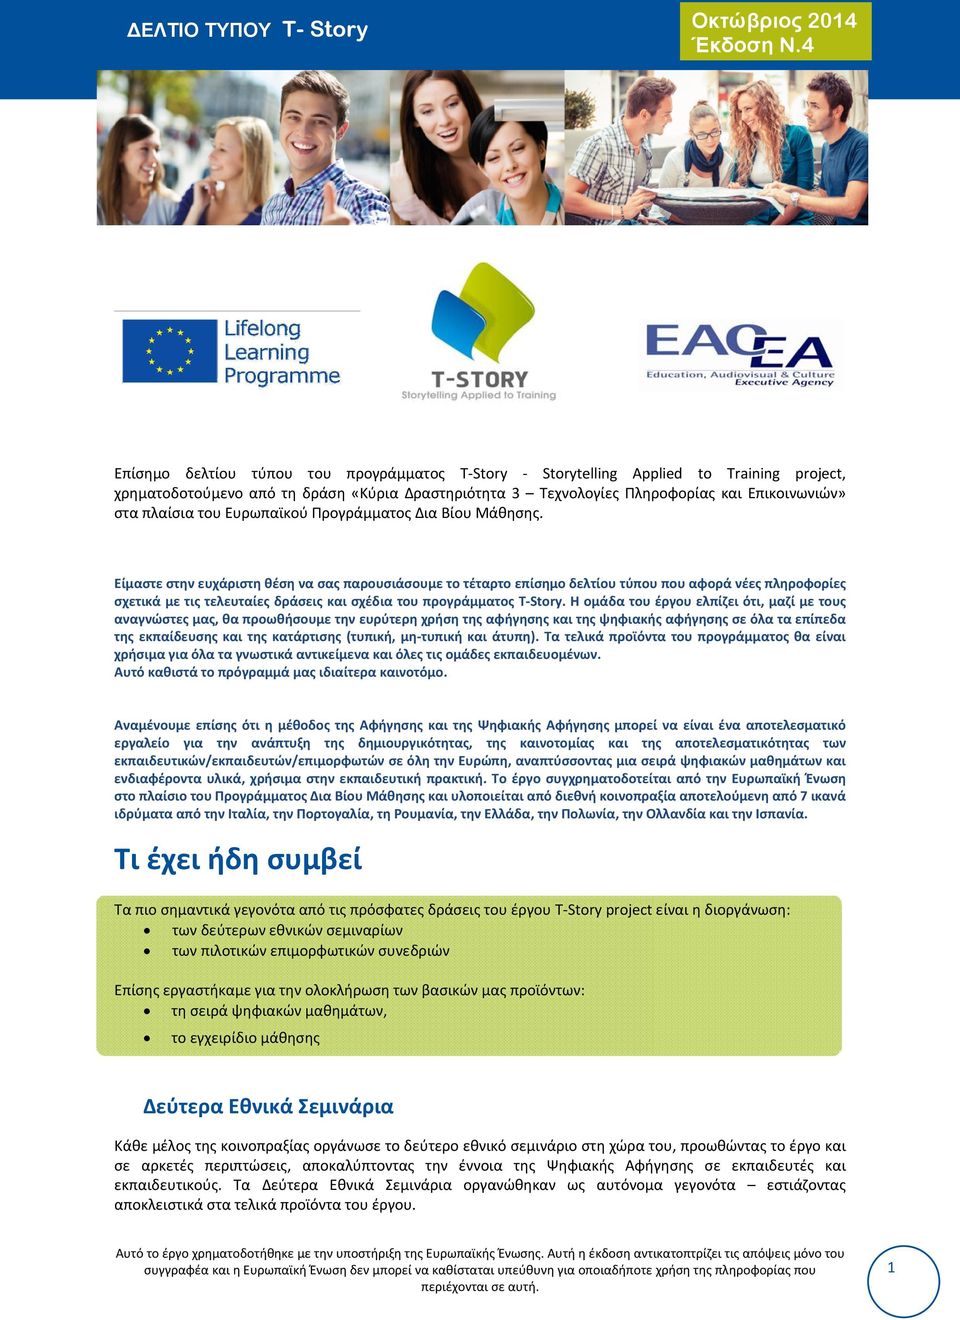 Ευρωπαϊκού Προγράμματος Δια Βίου Μάθησης.